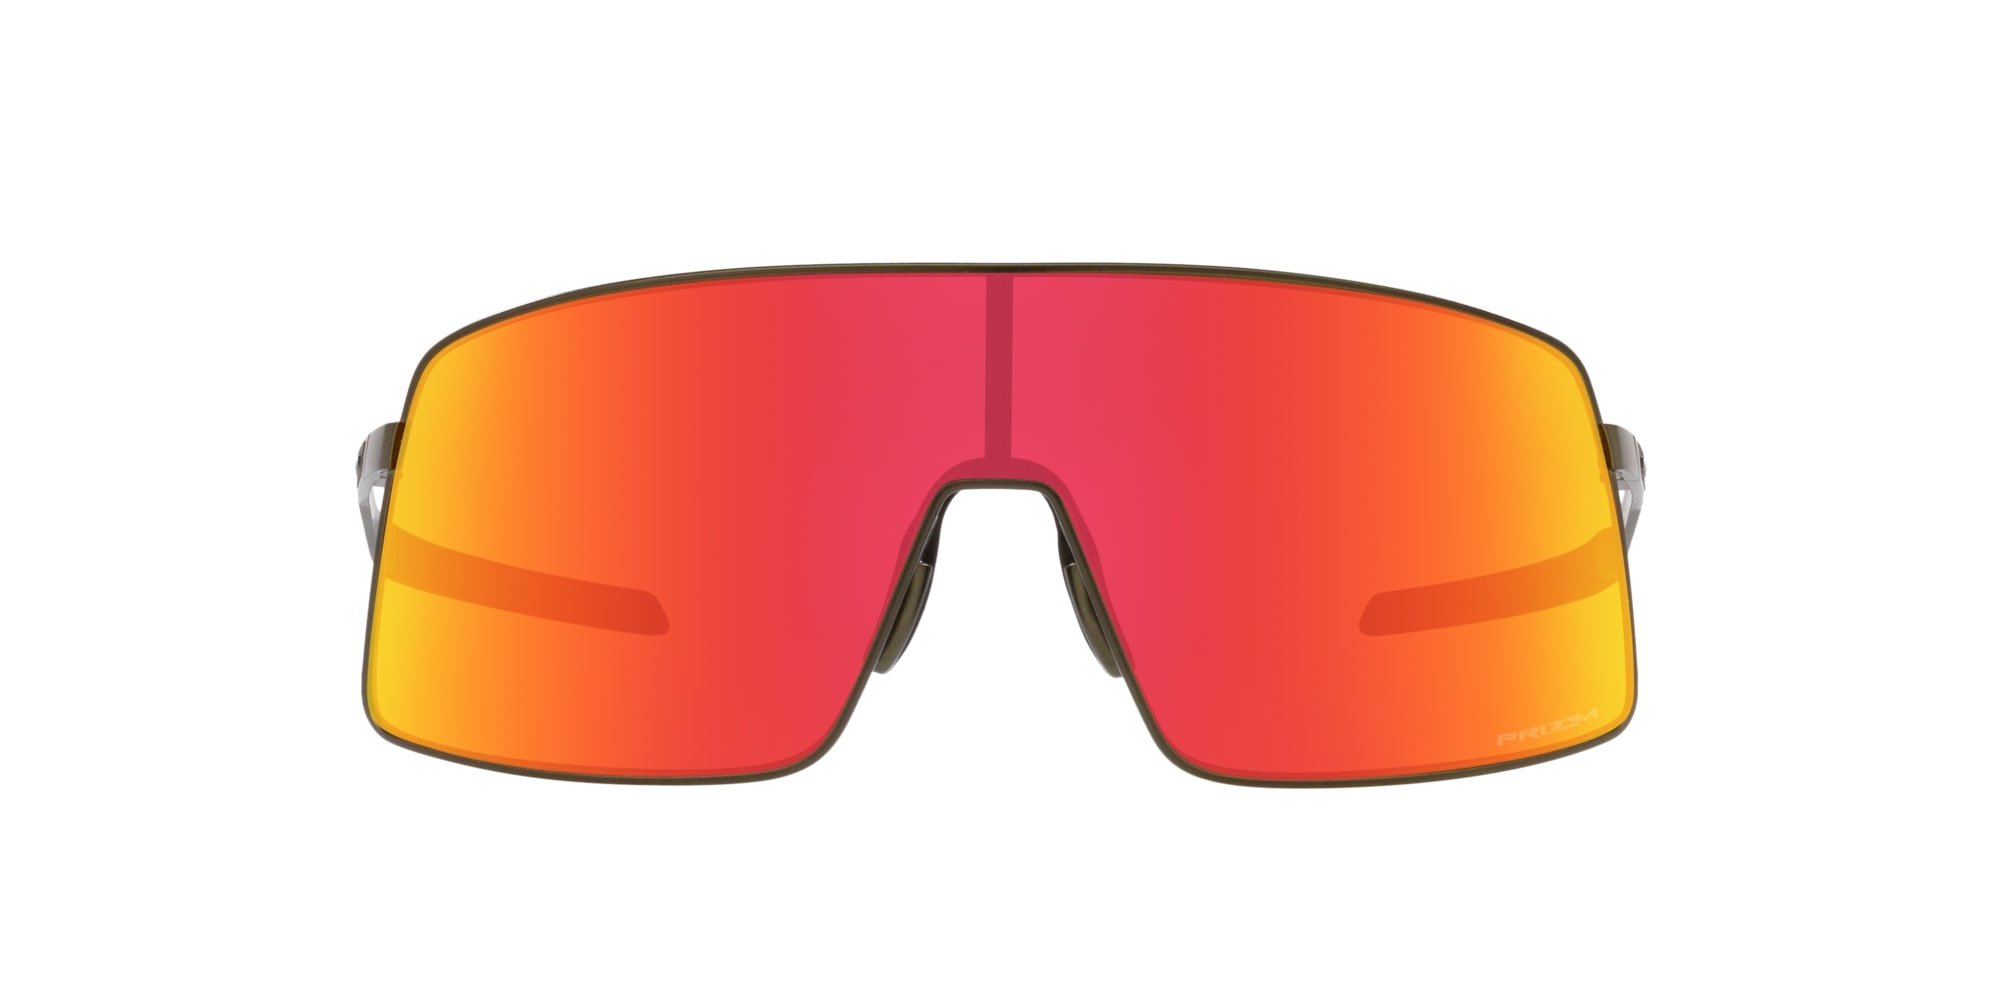 Das Bild zeigt die Sonnenbrille OO6013 02 von der Marke Oakley in carbon